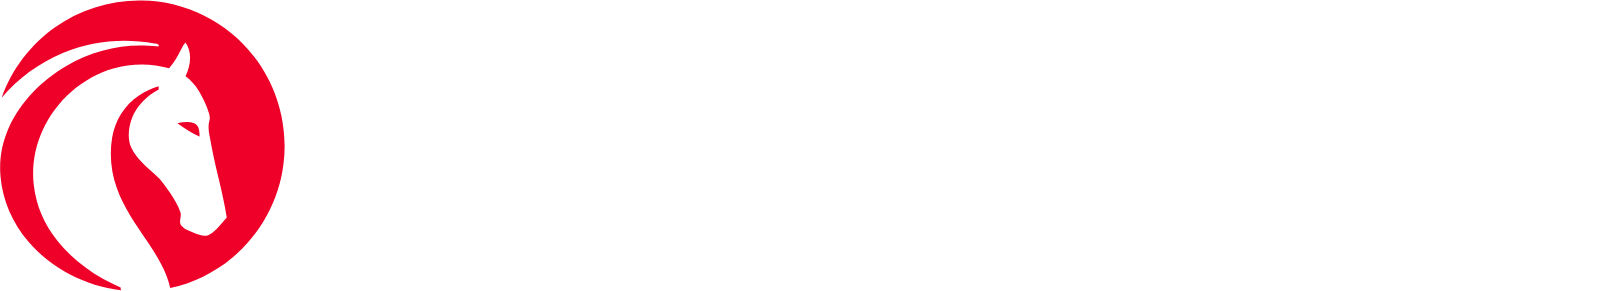 Jackson Financial logo grand pour les fonds sombres (PNG transparent)